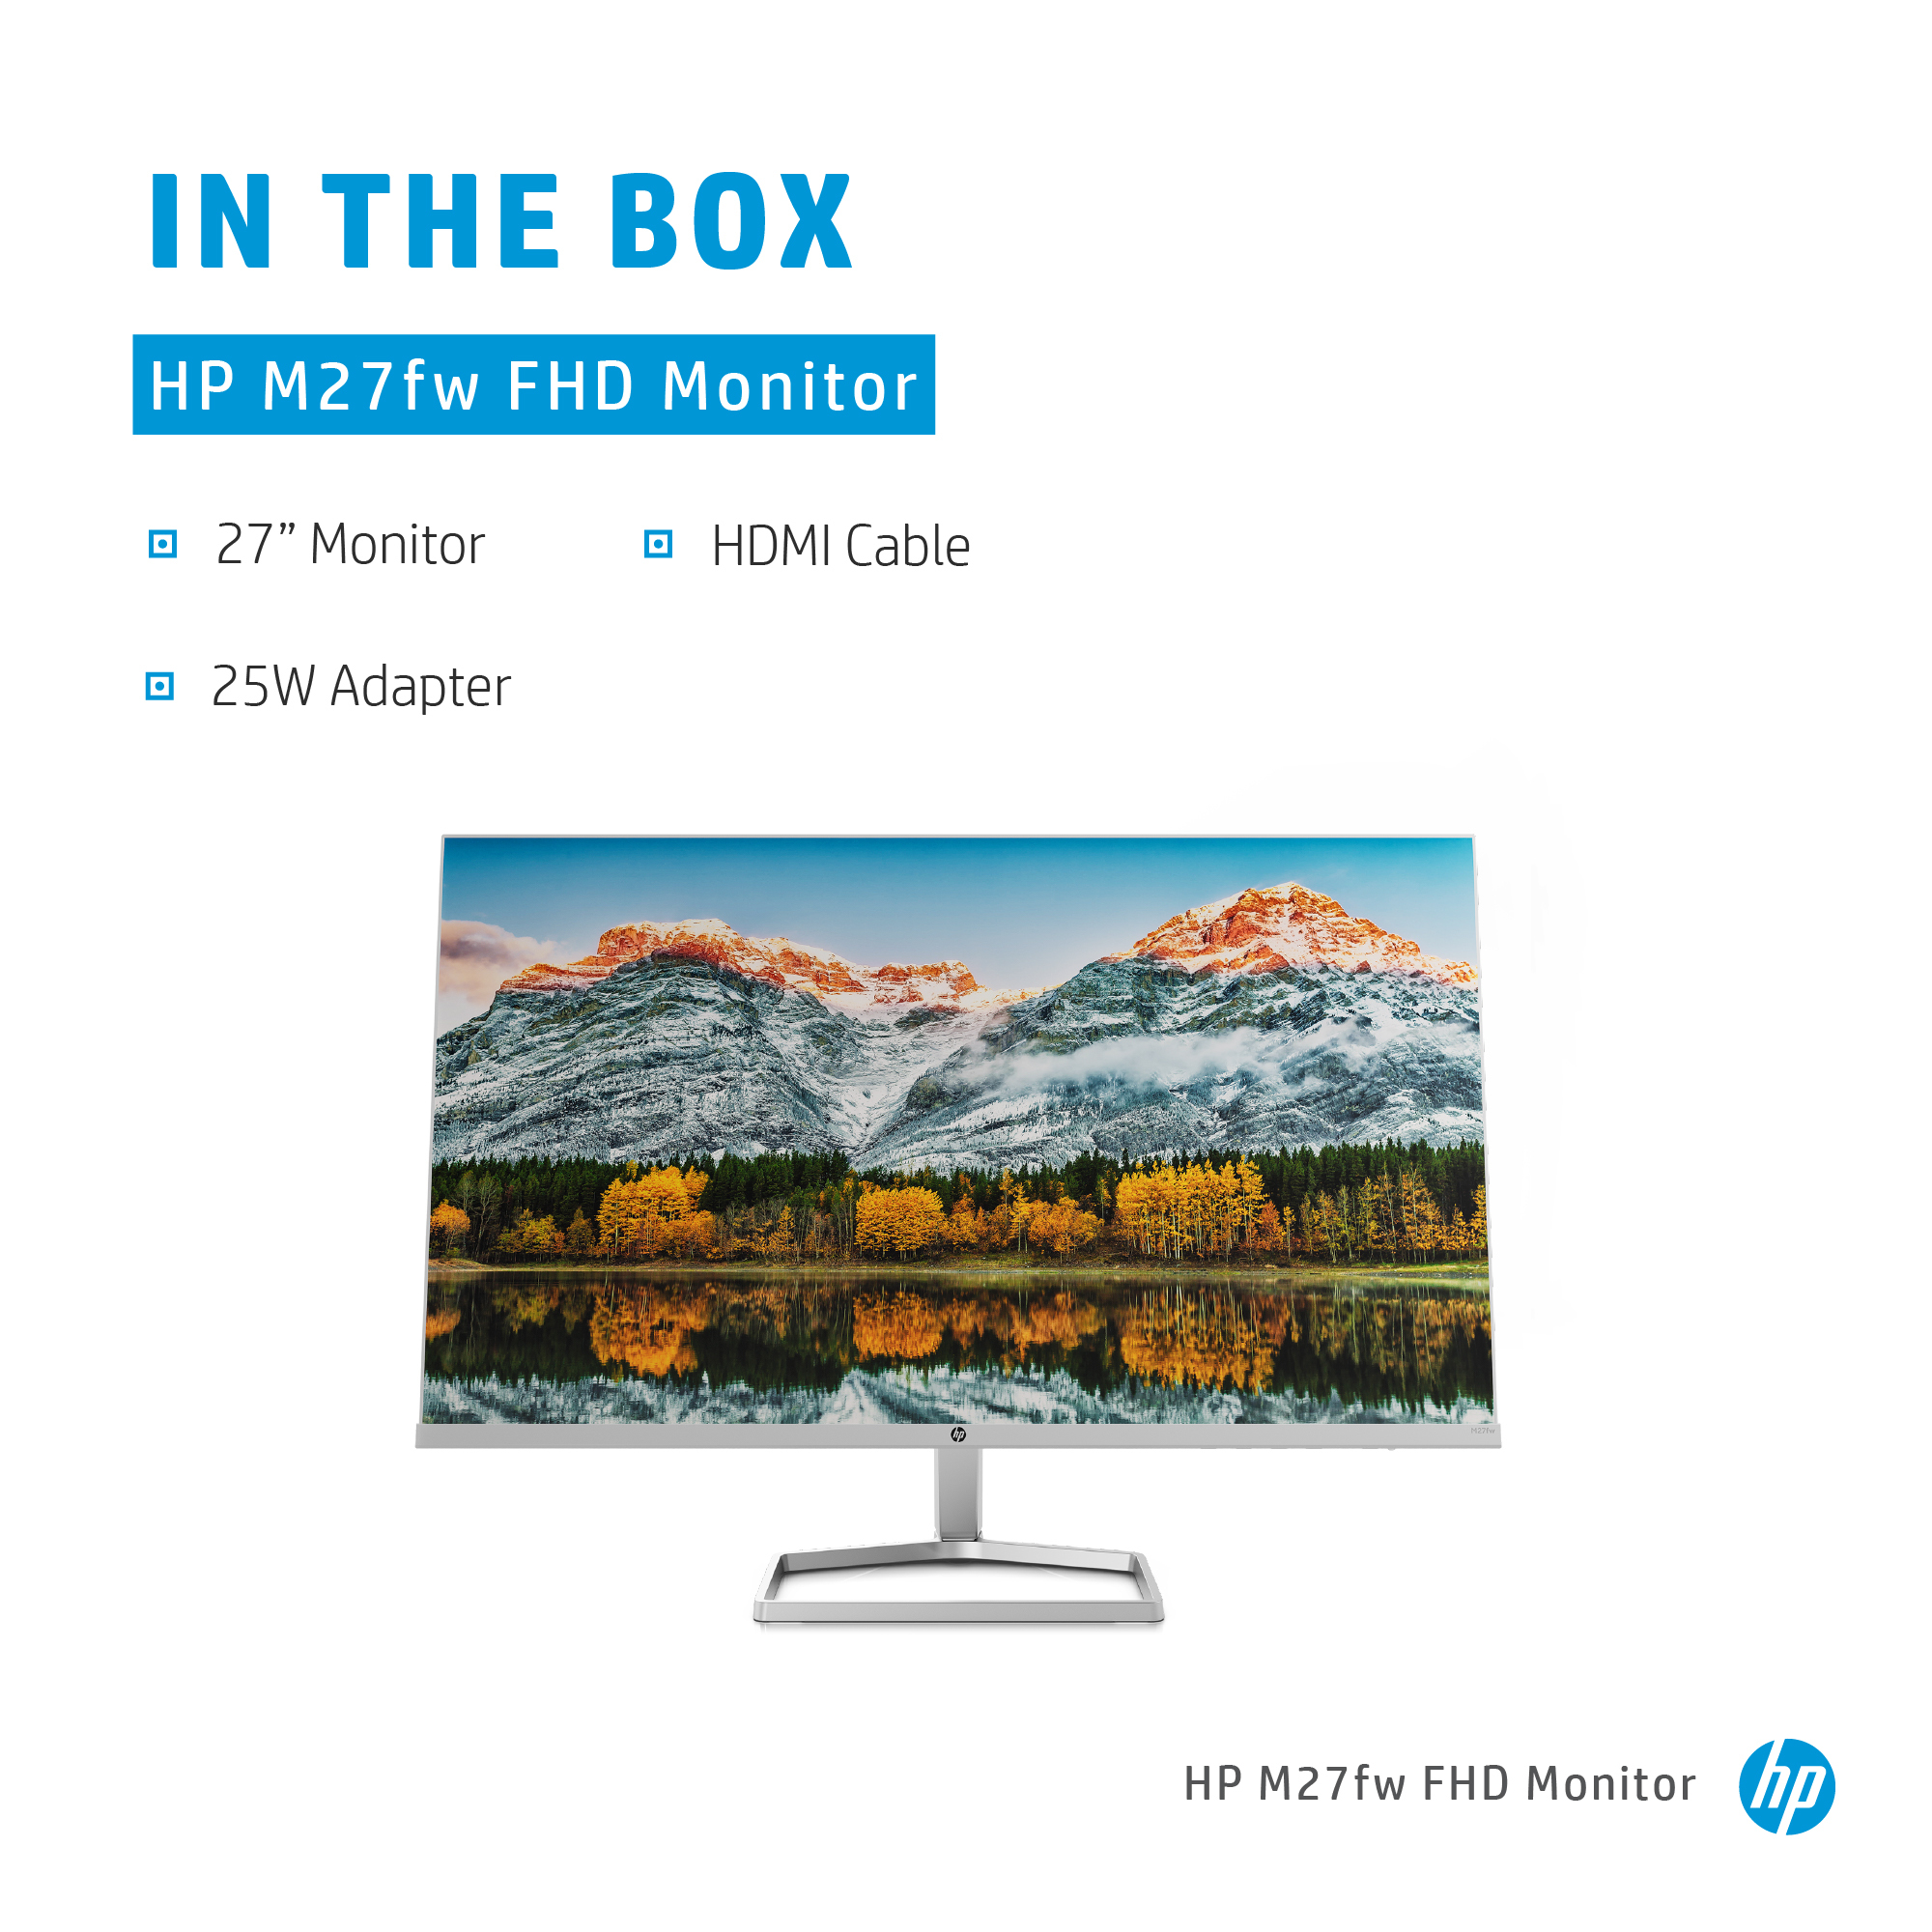 HP M27fw FHD Monitor